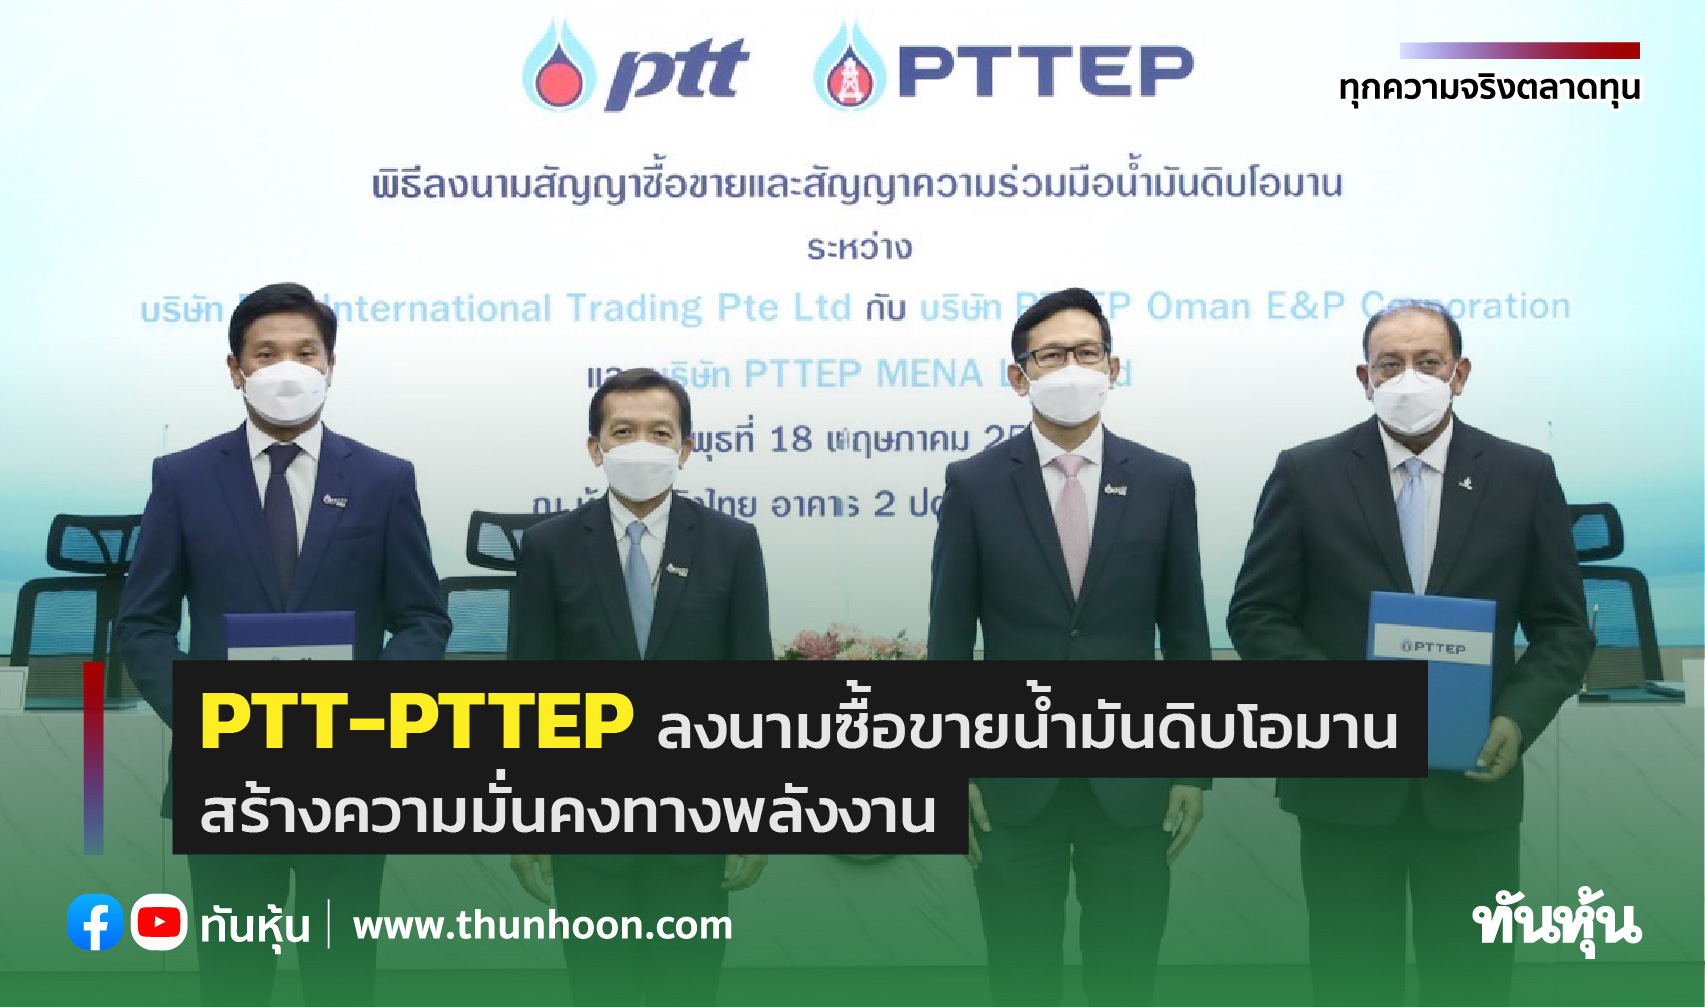 PTT-PTTEP ลงนามซื้อขายน้ำมันดิบโอมาน สร้างความมั่นคงทางพลังงาน